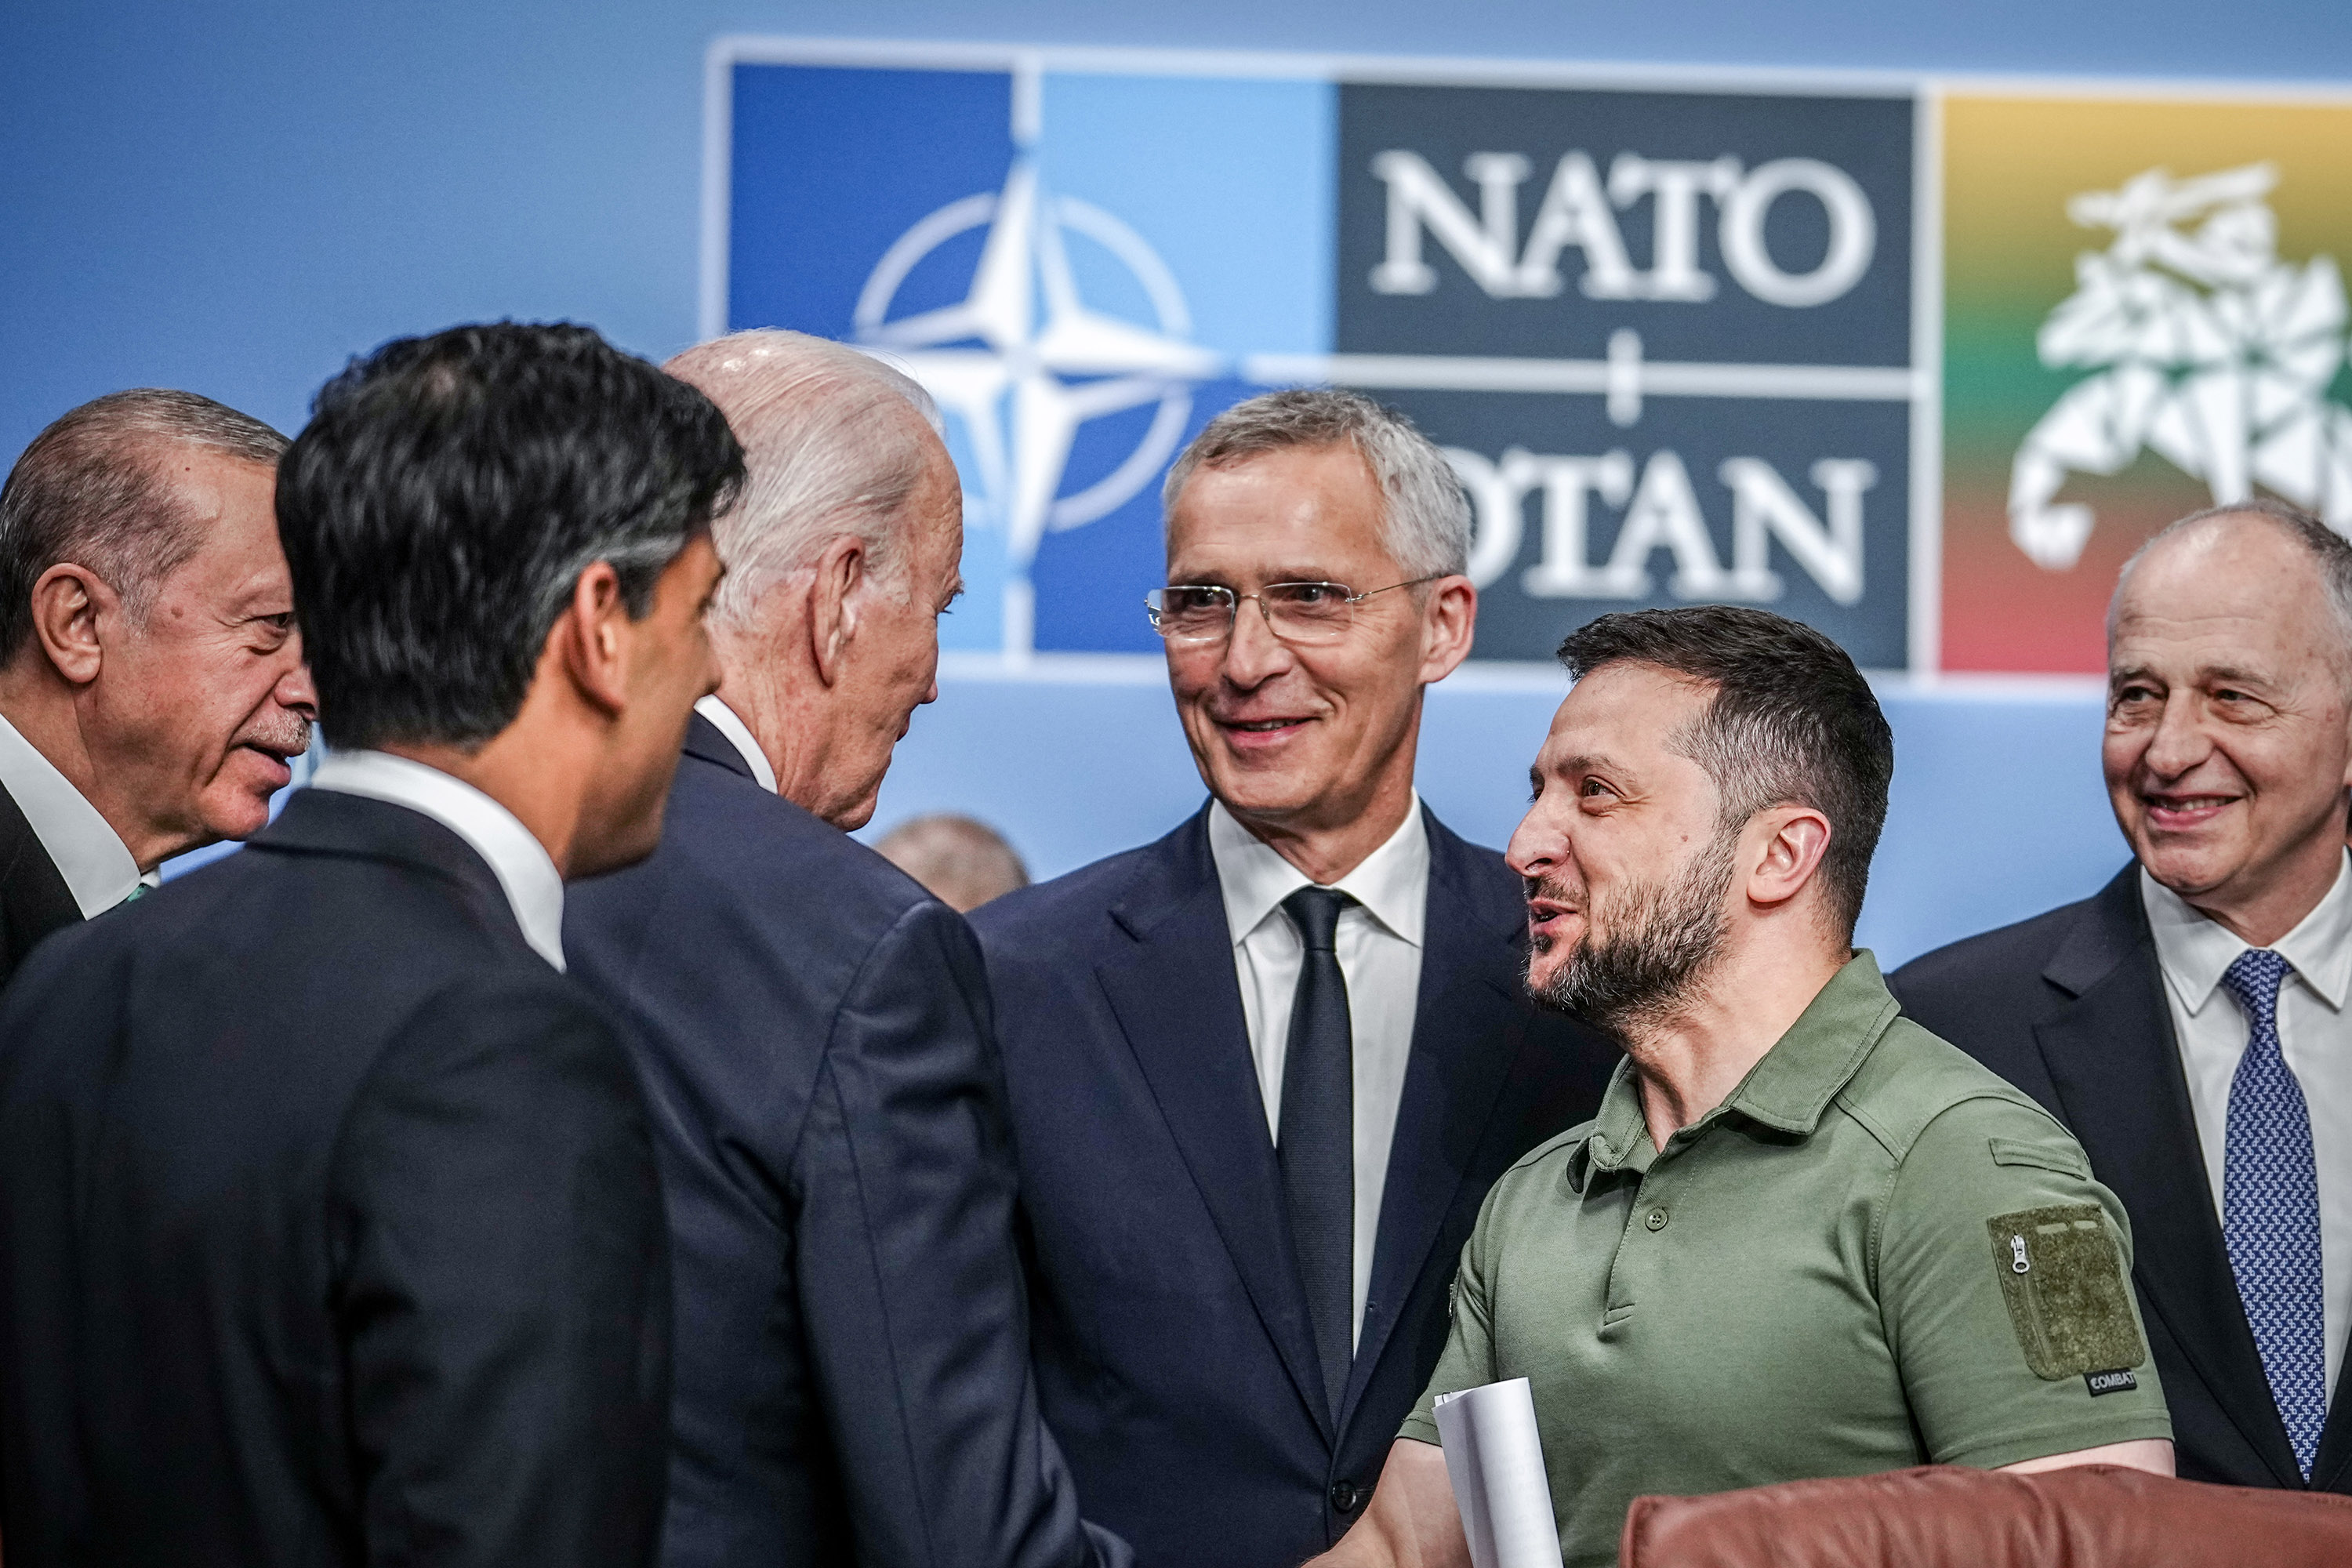 Zelenksy NATO summit was a "meaningful success" for Ukraine